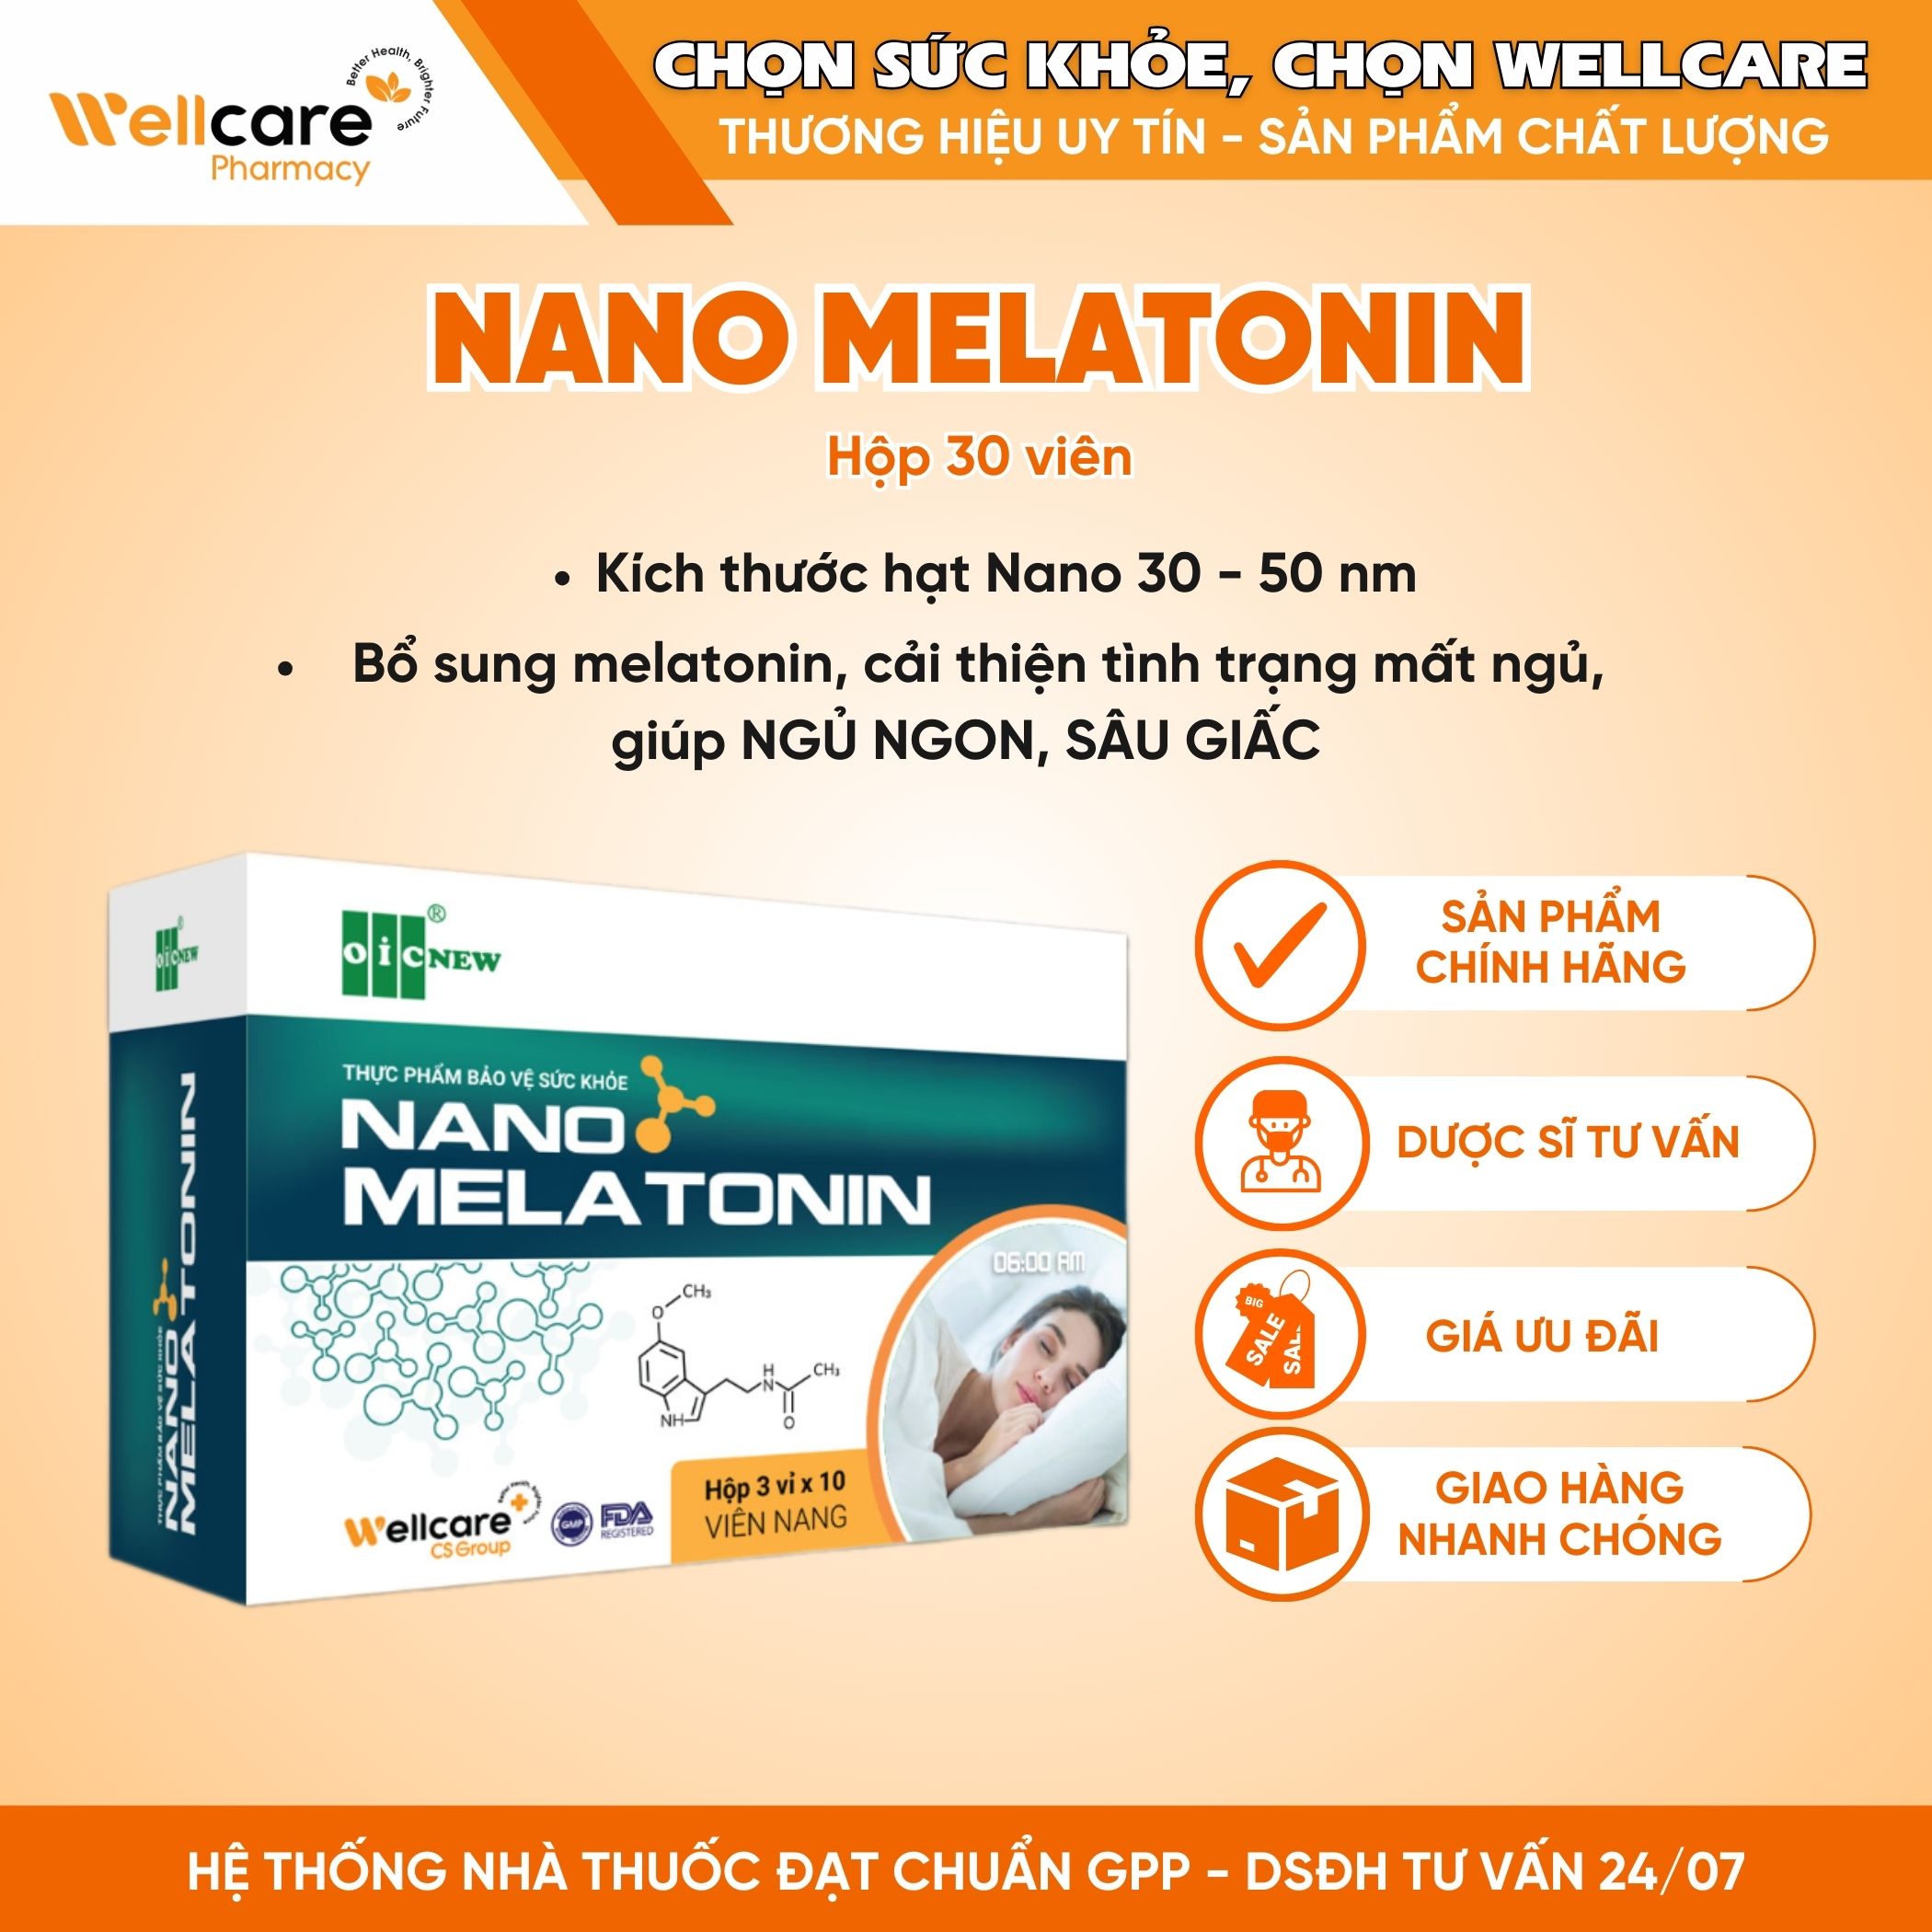 Nano Melatonin OIC NEW – Hỗ trợ cải thiện tình trạng mất ngủ, giúp ngủ ngon (Hộp 3 vỉ x 10 viên)